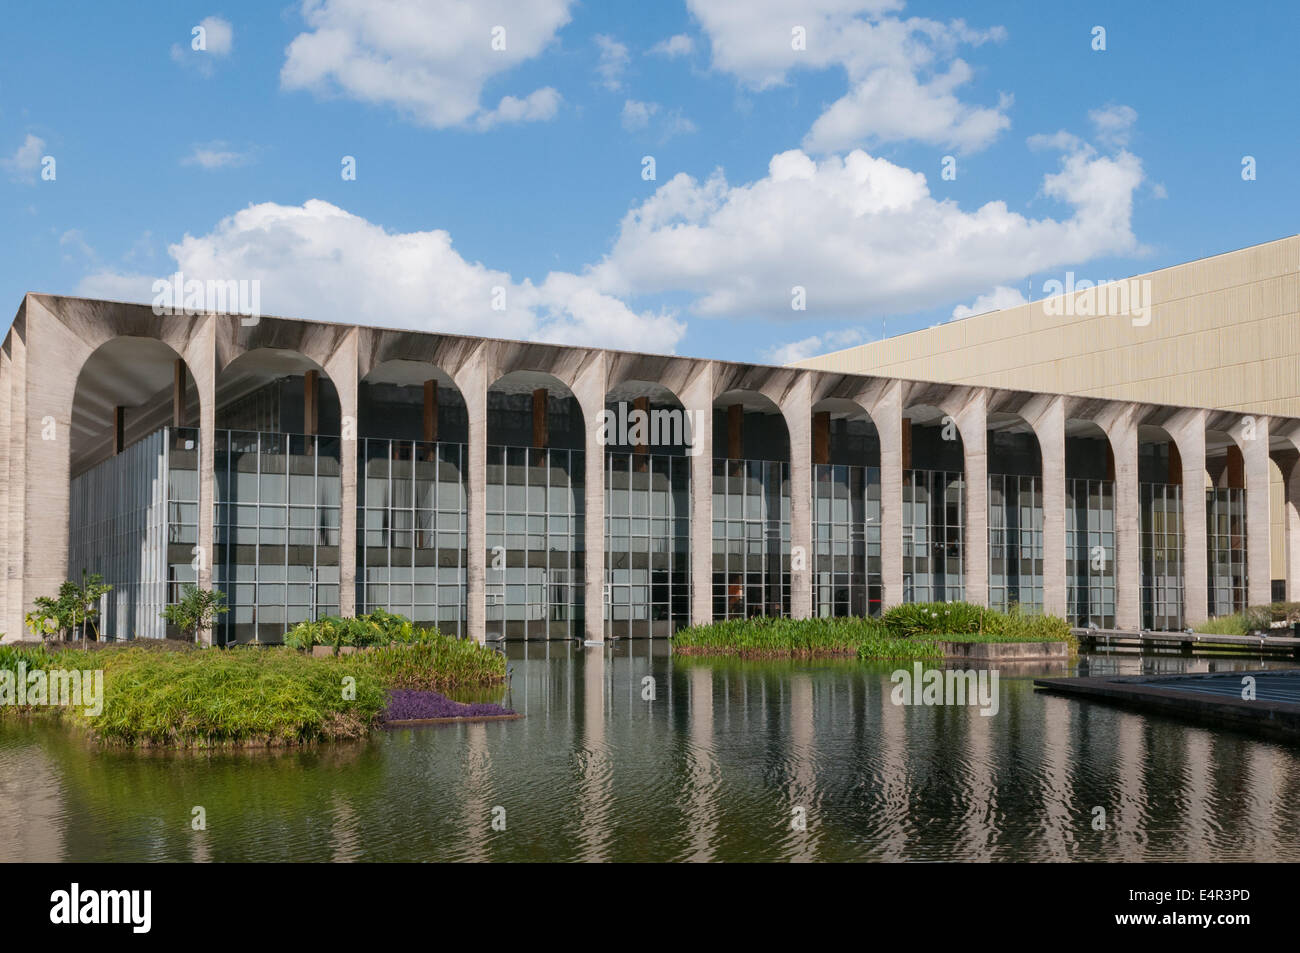 Palacio Itamaraty , Brazil's Foreign Ministry building by Oscar Niemeyer, Brasilia Stock Photo